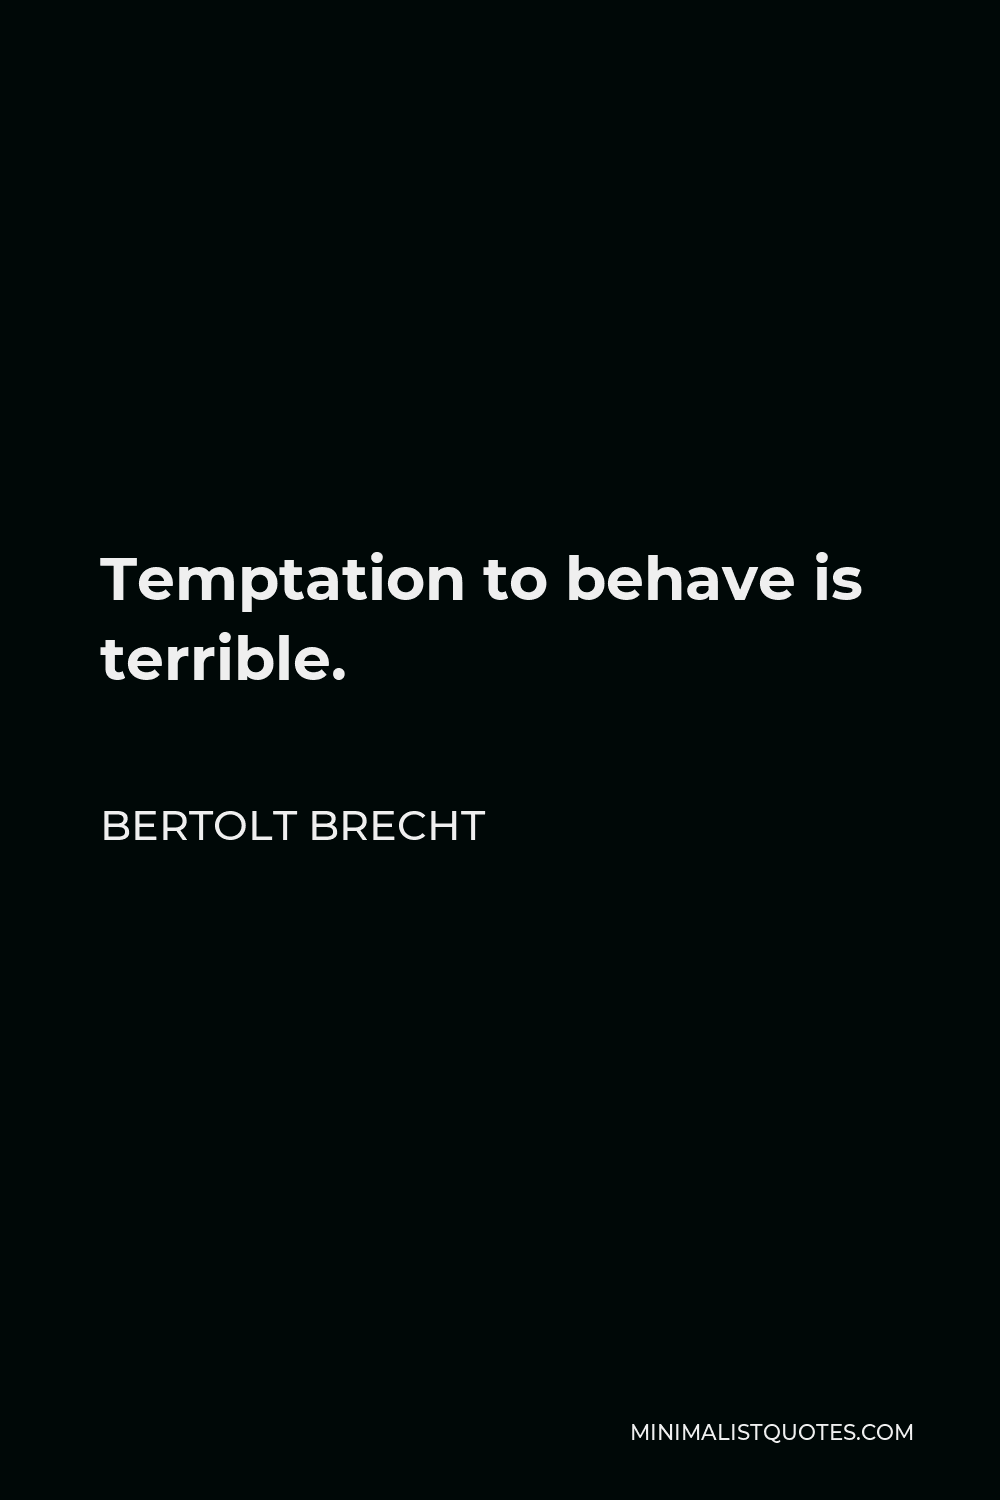 Bertolt Brecht Quote - Temptation to behave is terrible.